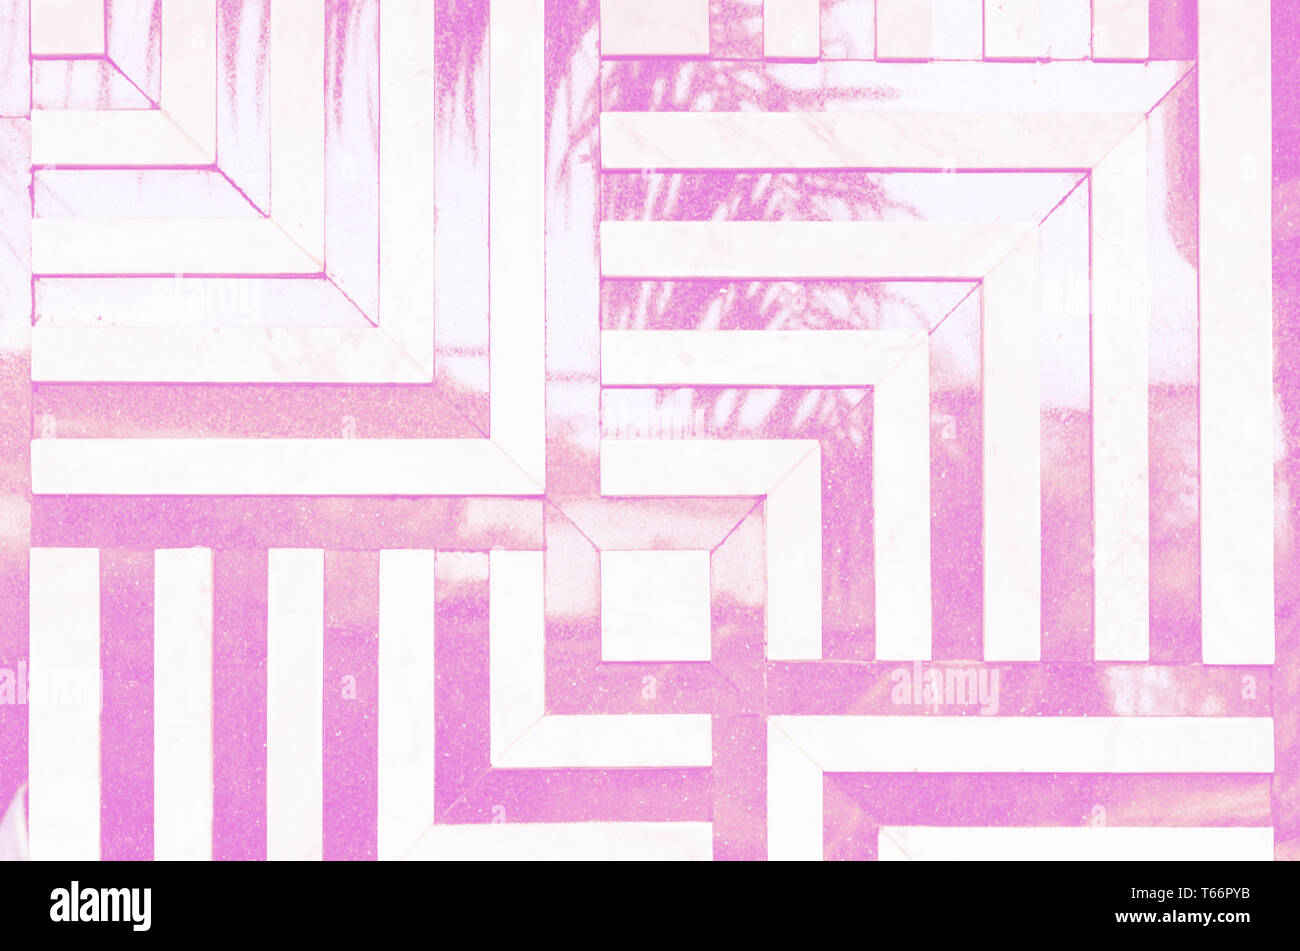 Neon Farben psychedelischen Hintergrund. Linear, eckige Muster von Marmor Fliesen an der Wand. Reflexion der palm leaf. Stockfoto